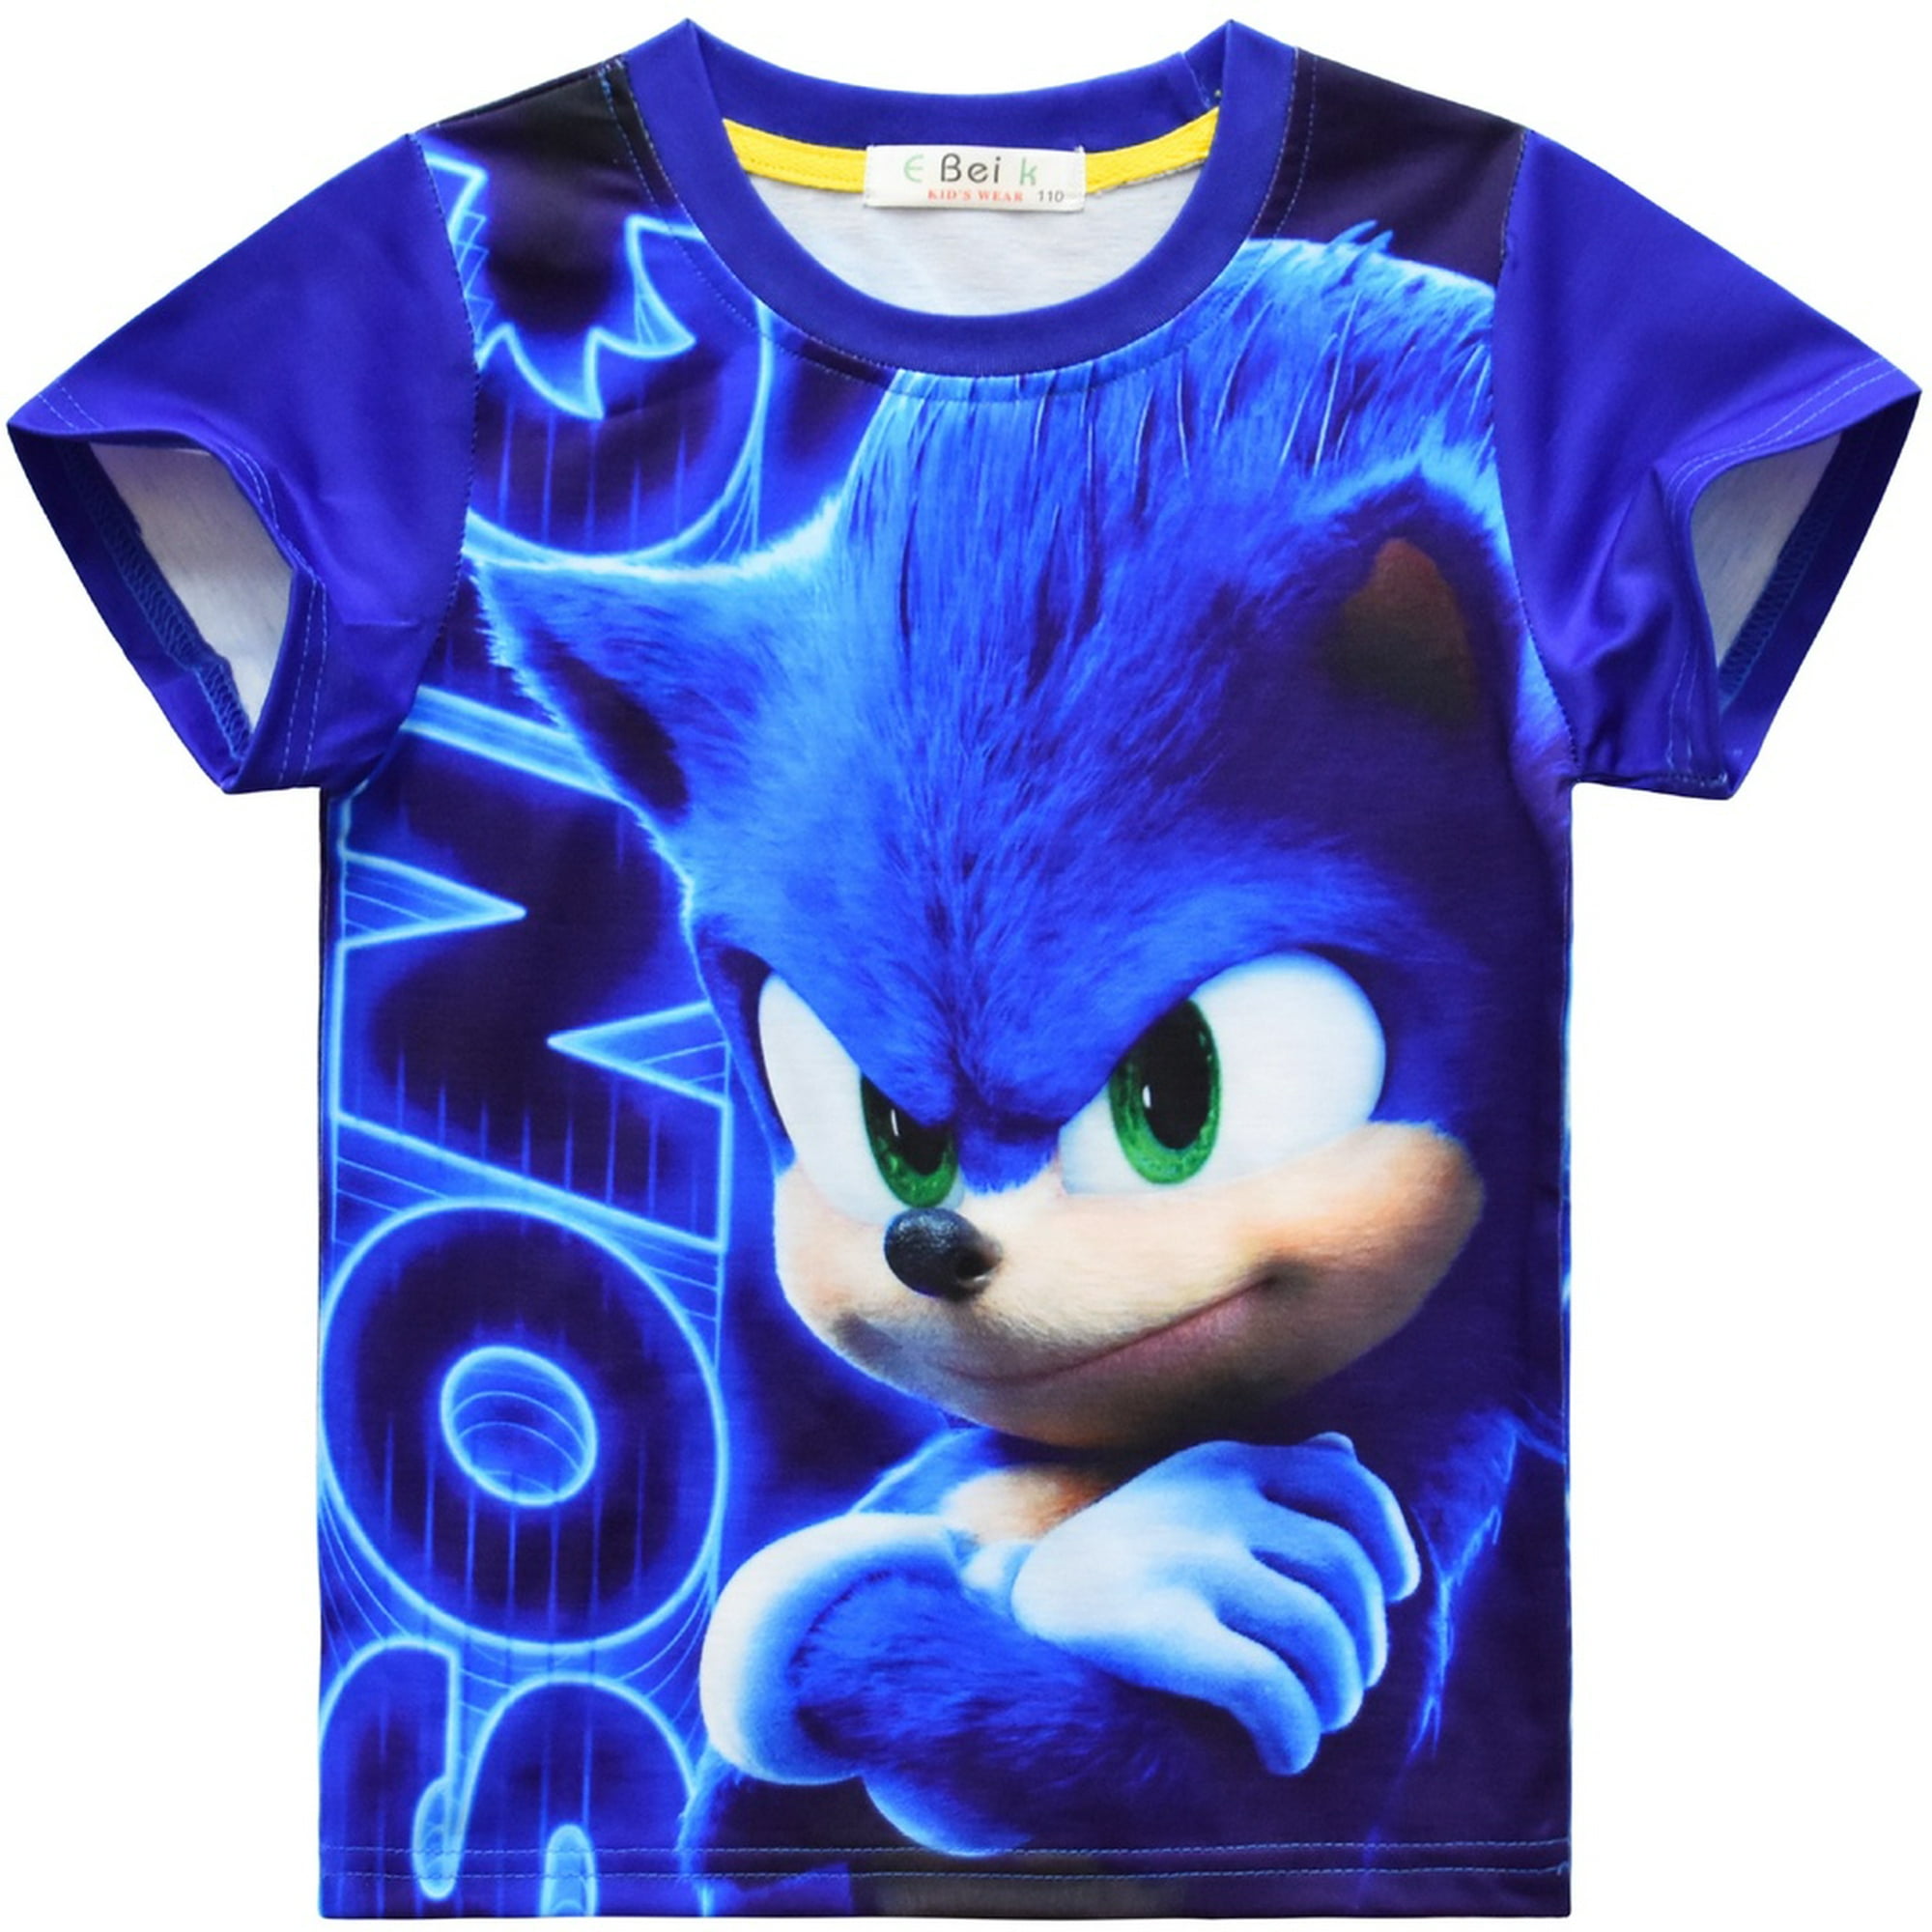 Nuevo Sonic the Hedgehog Cosplay Disfraz Para Niños Juego De